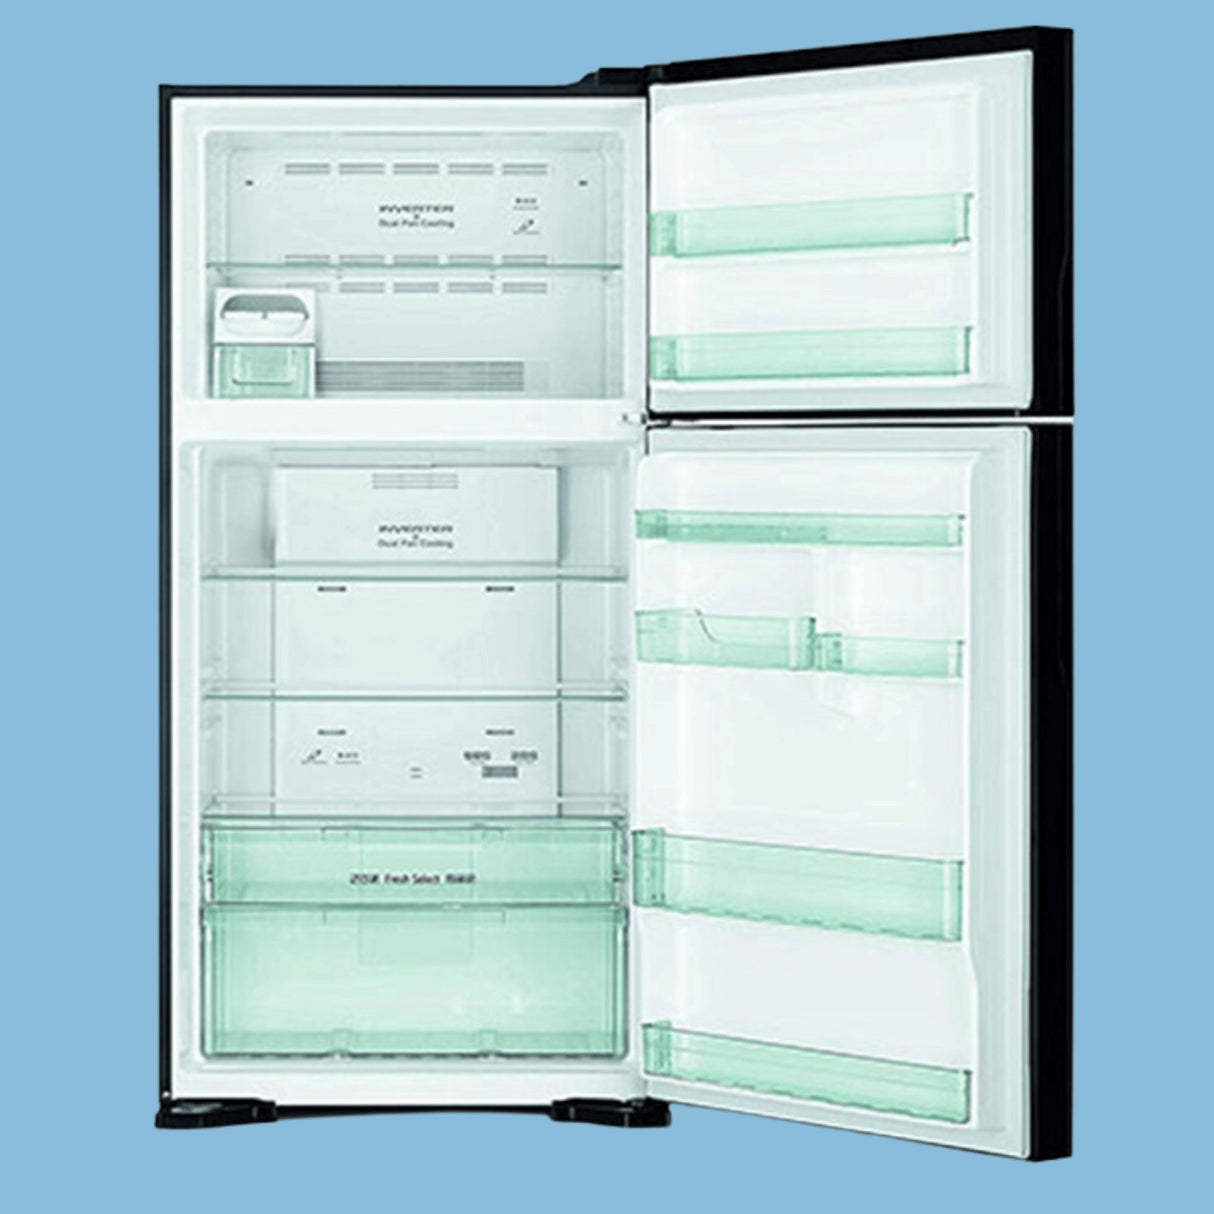 Hitachi 770 Liters Double Door Refrigerator RV860PUN1KBSL - KWT Tech Mart